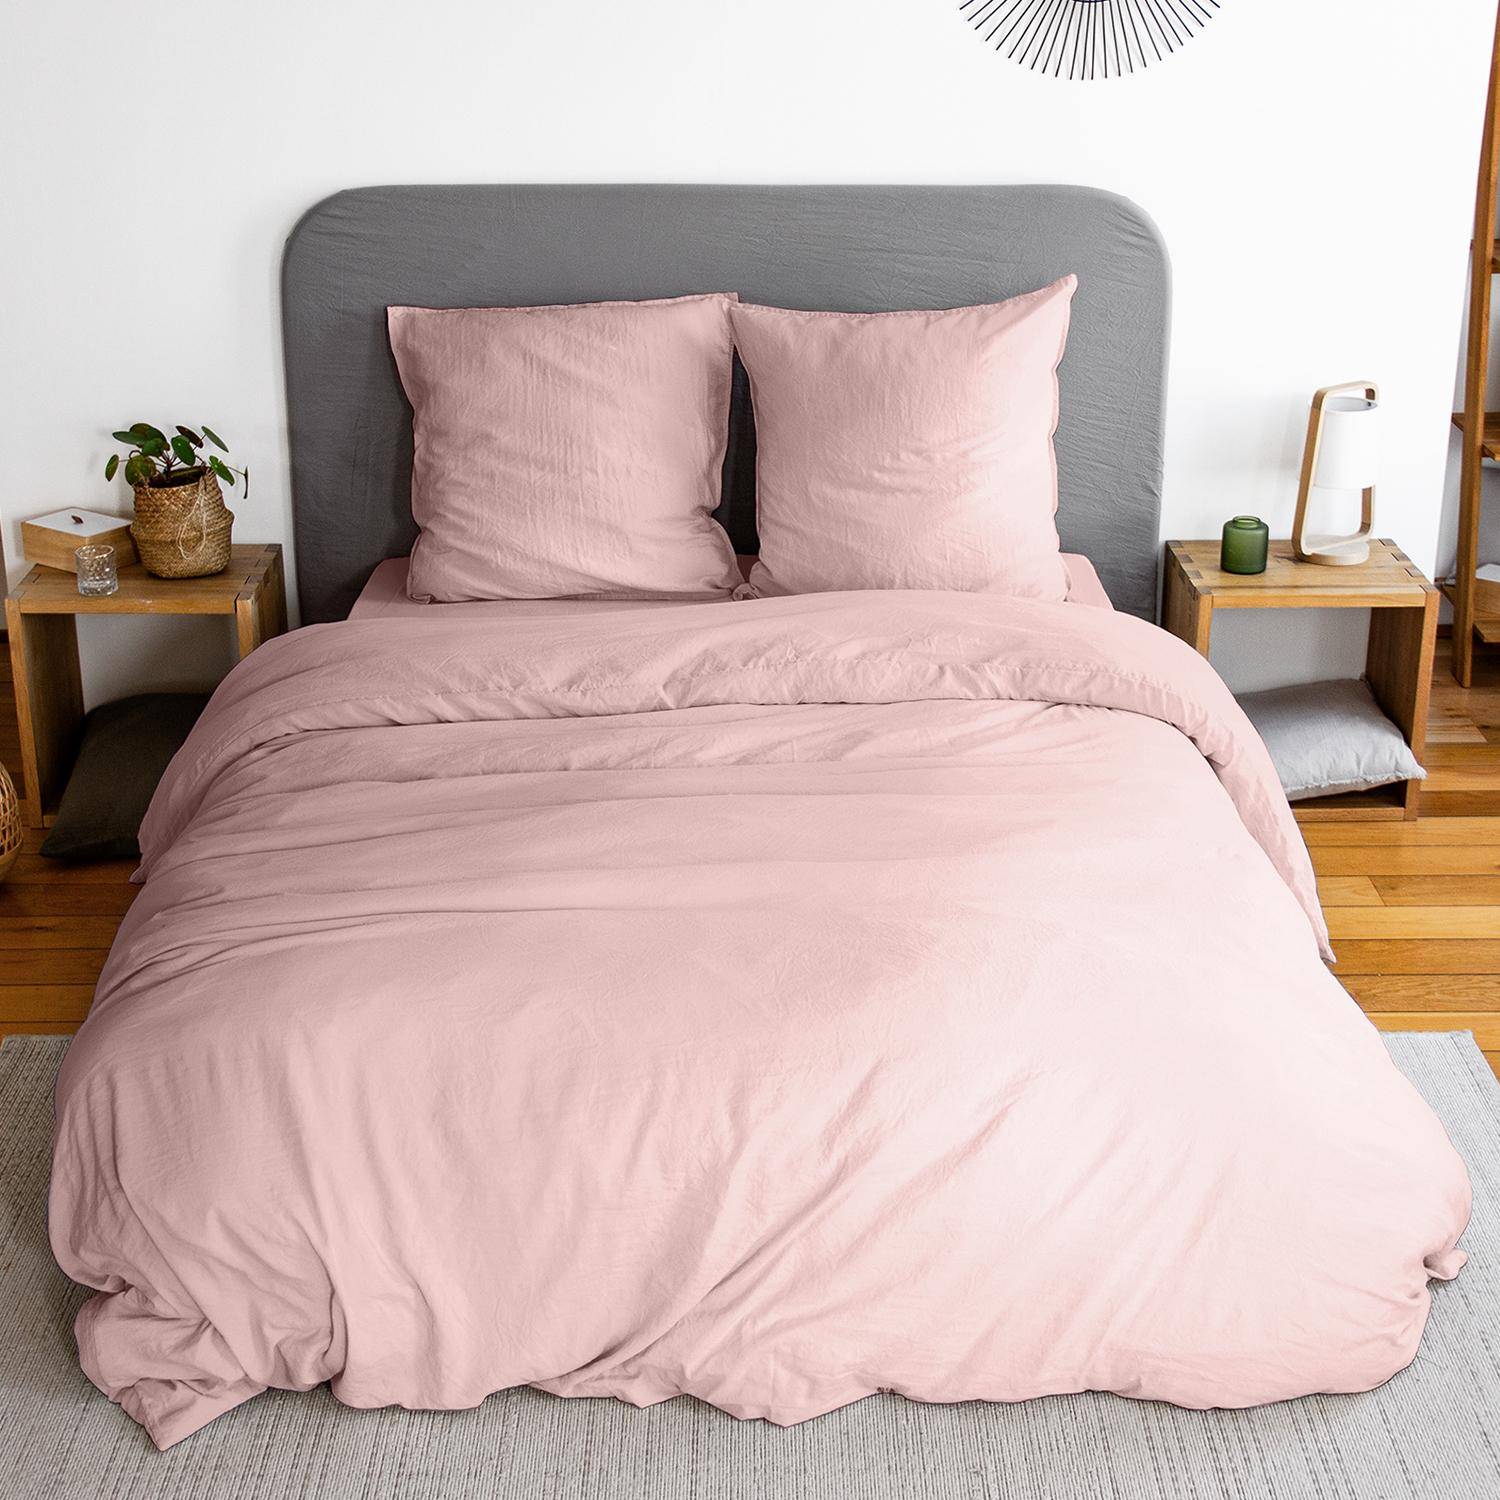 Bettwäsche-Set aus vorgewaschener Mikrofaser in rosa 240 x 220 cm für Doppelbetten, 1 Bettbezug und 2 Kissenbezüge Photo3